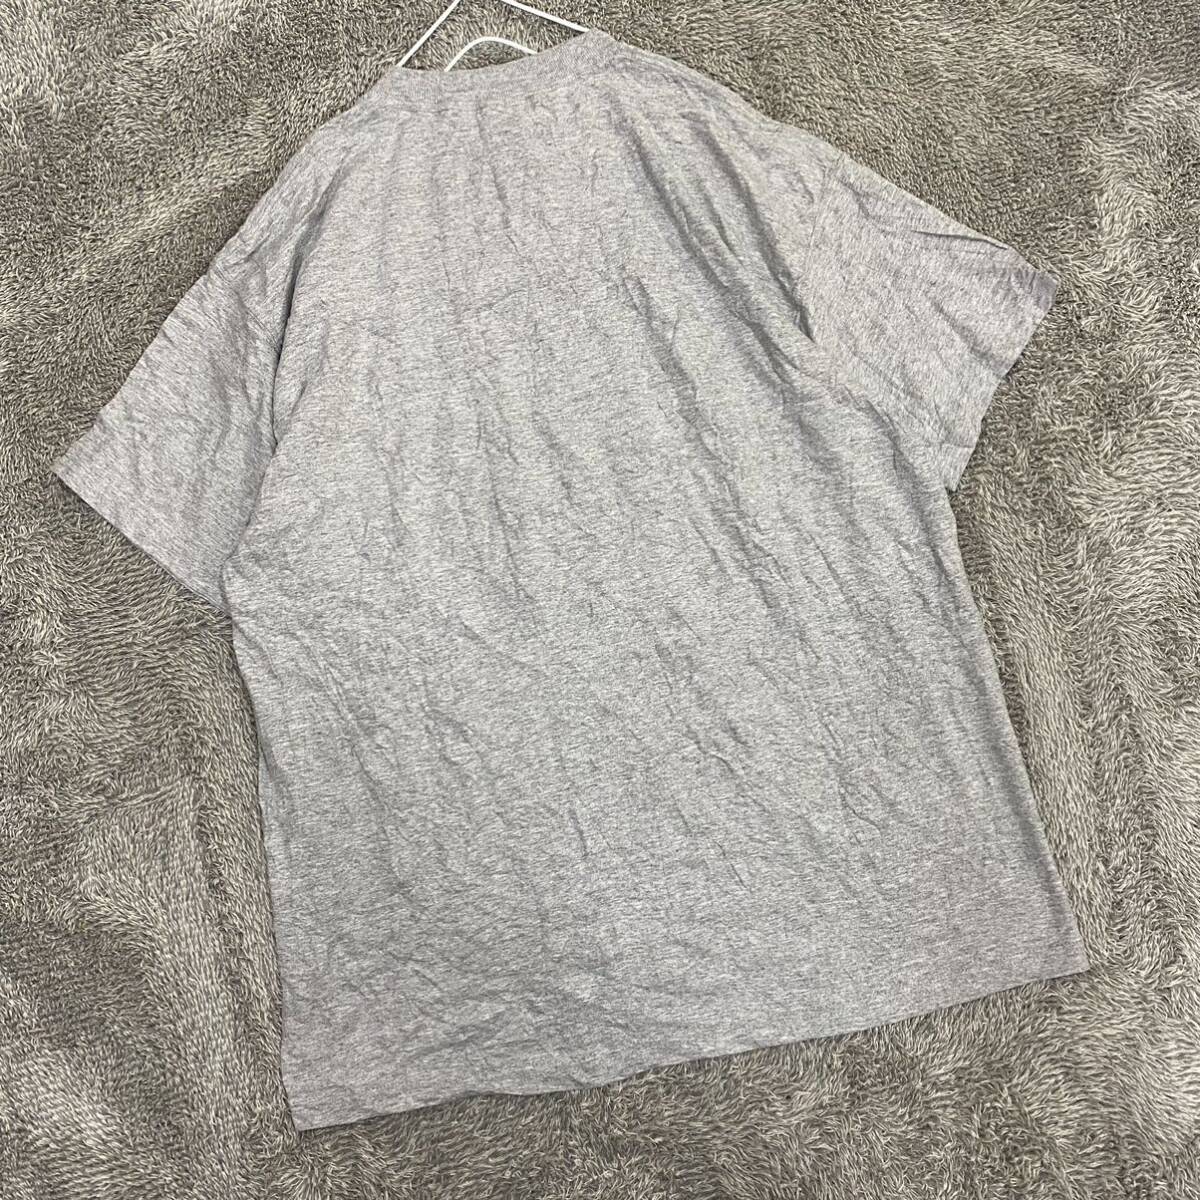 FRUIT OF THE LOOM フルーツオブザルーム Tシャツ 半袖カットソー サイズXL グレー 灰色 メンズ トップス 最落なし （G19）_画像2